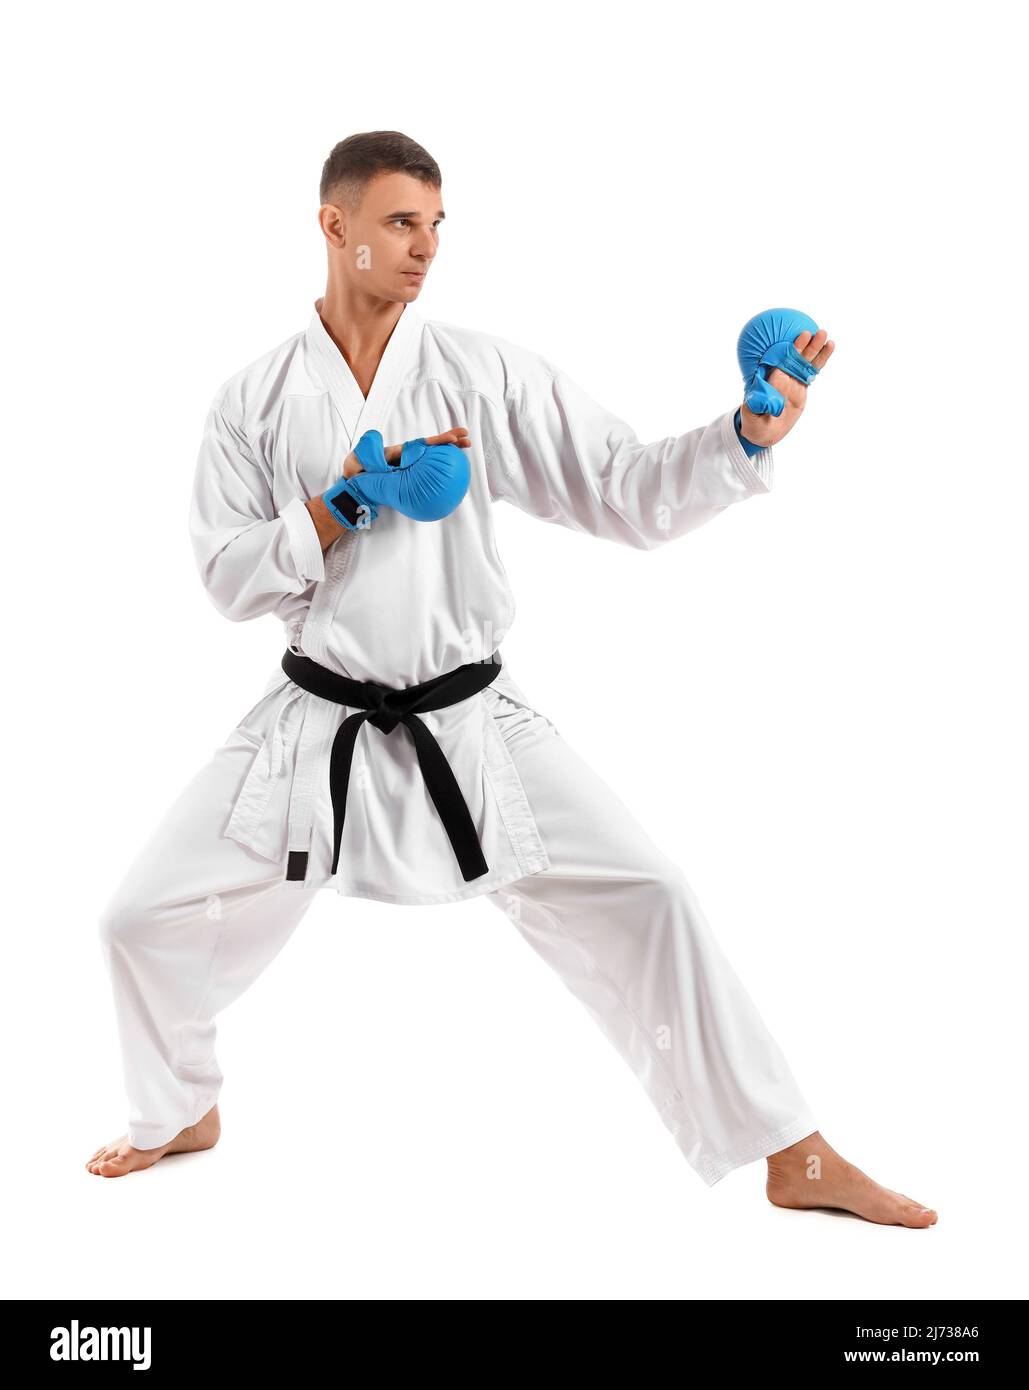 Uomo con cintura nera che pratica il karate su sfondo bianco Foto stock -  Alamy